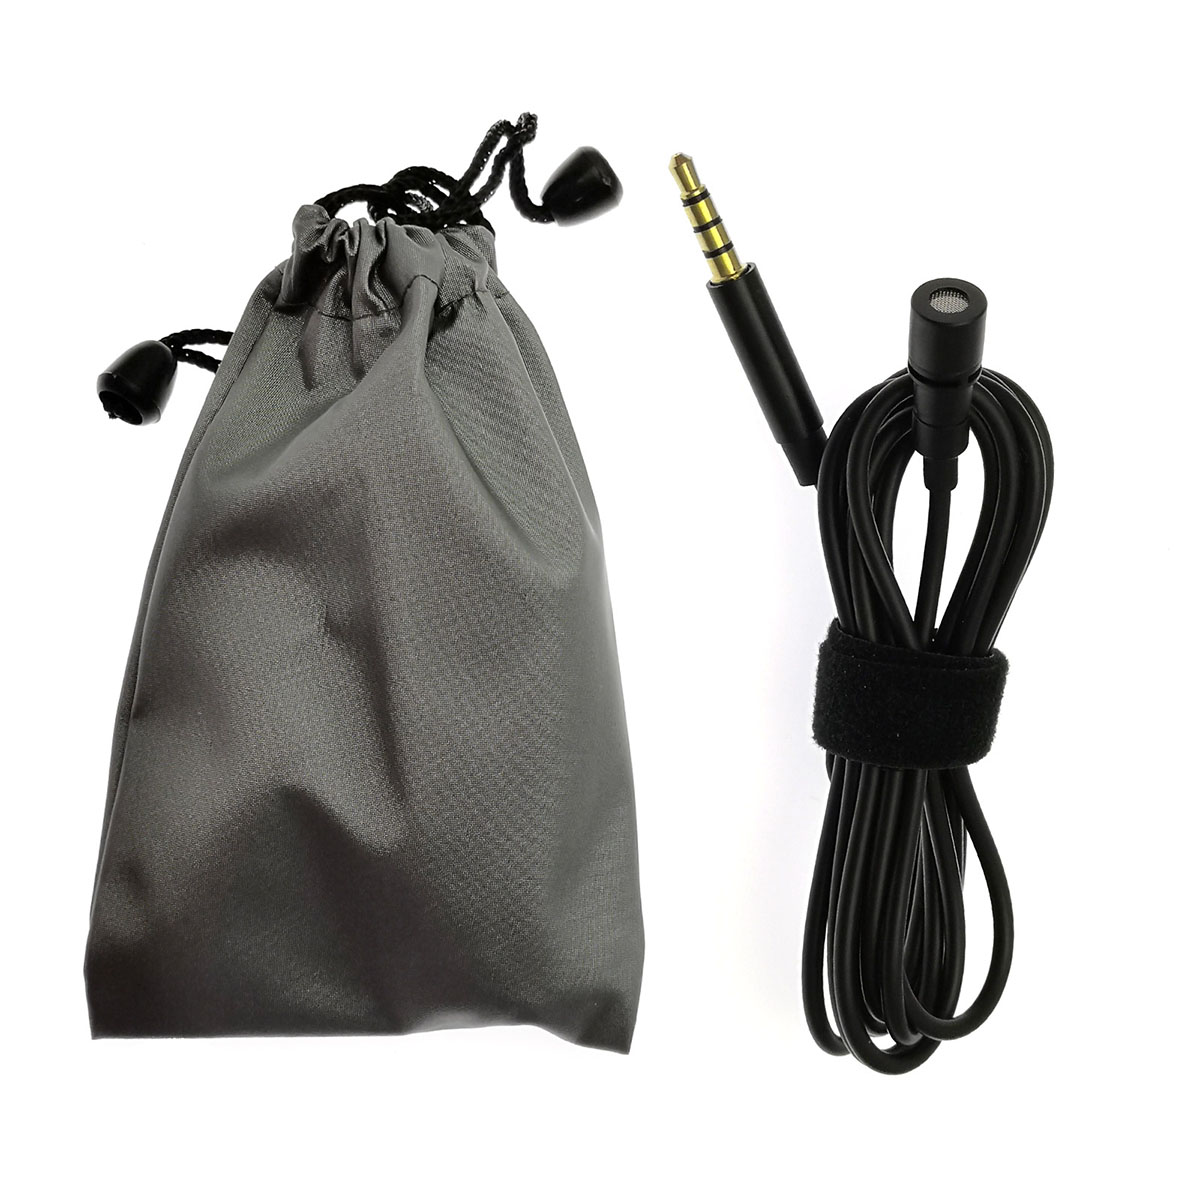 Микрофон на прищепке (петличка) JH-043 Lavalier MicroPhone, цвет черный (уценка)